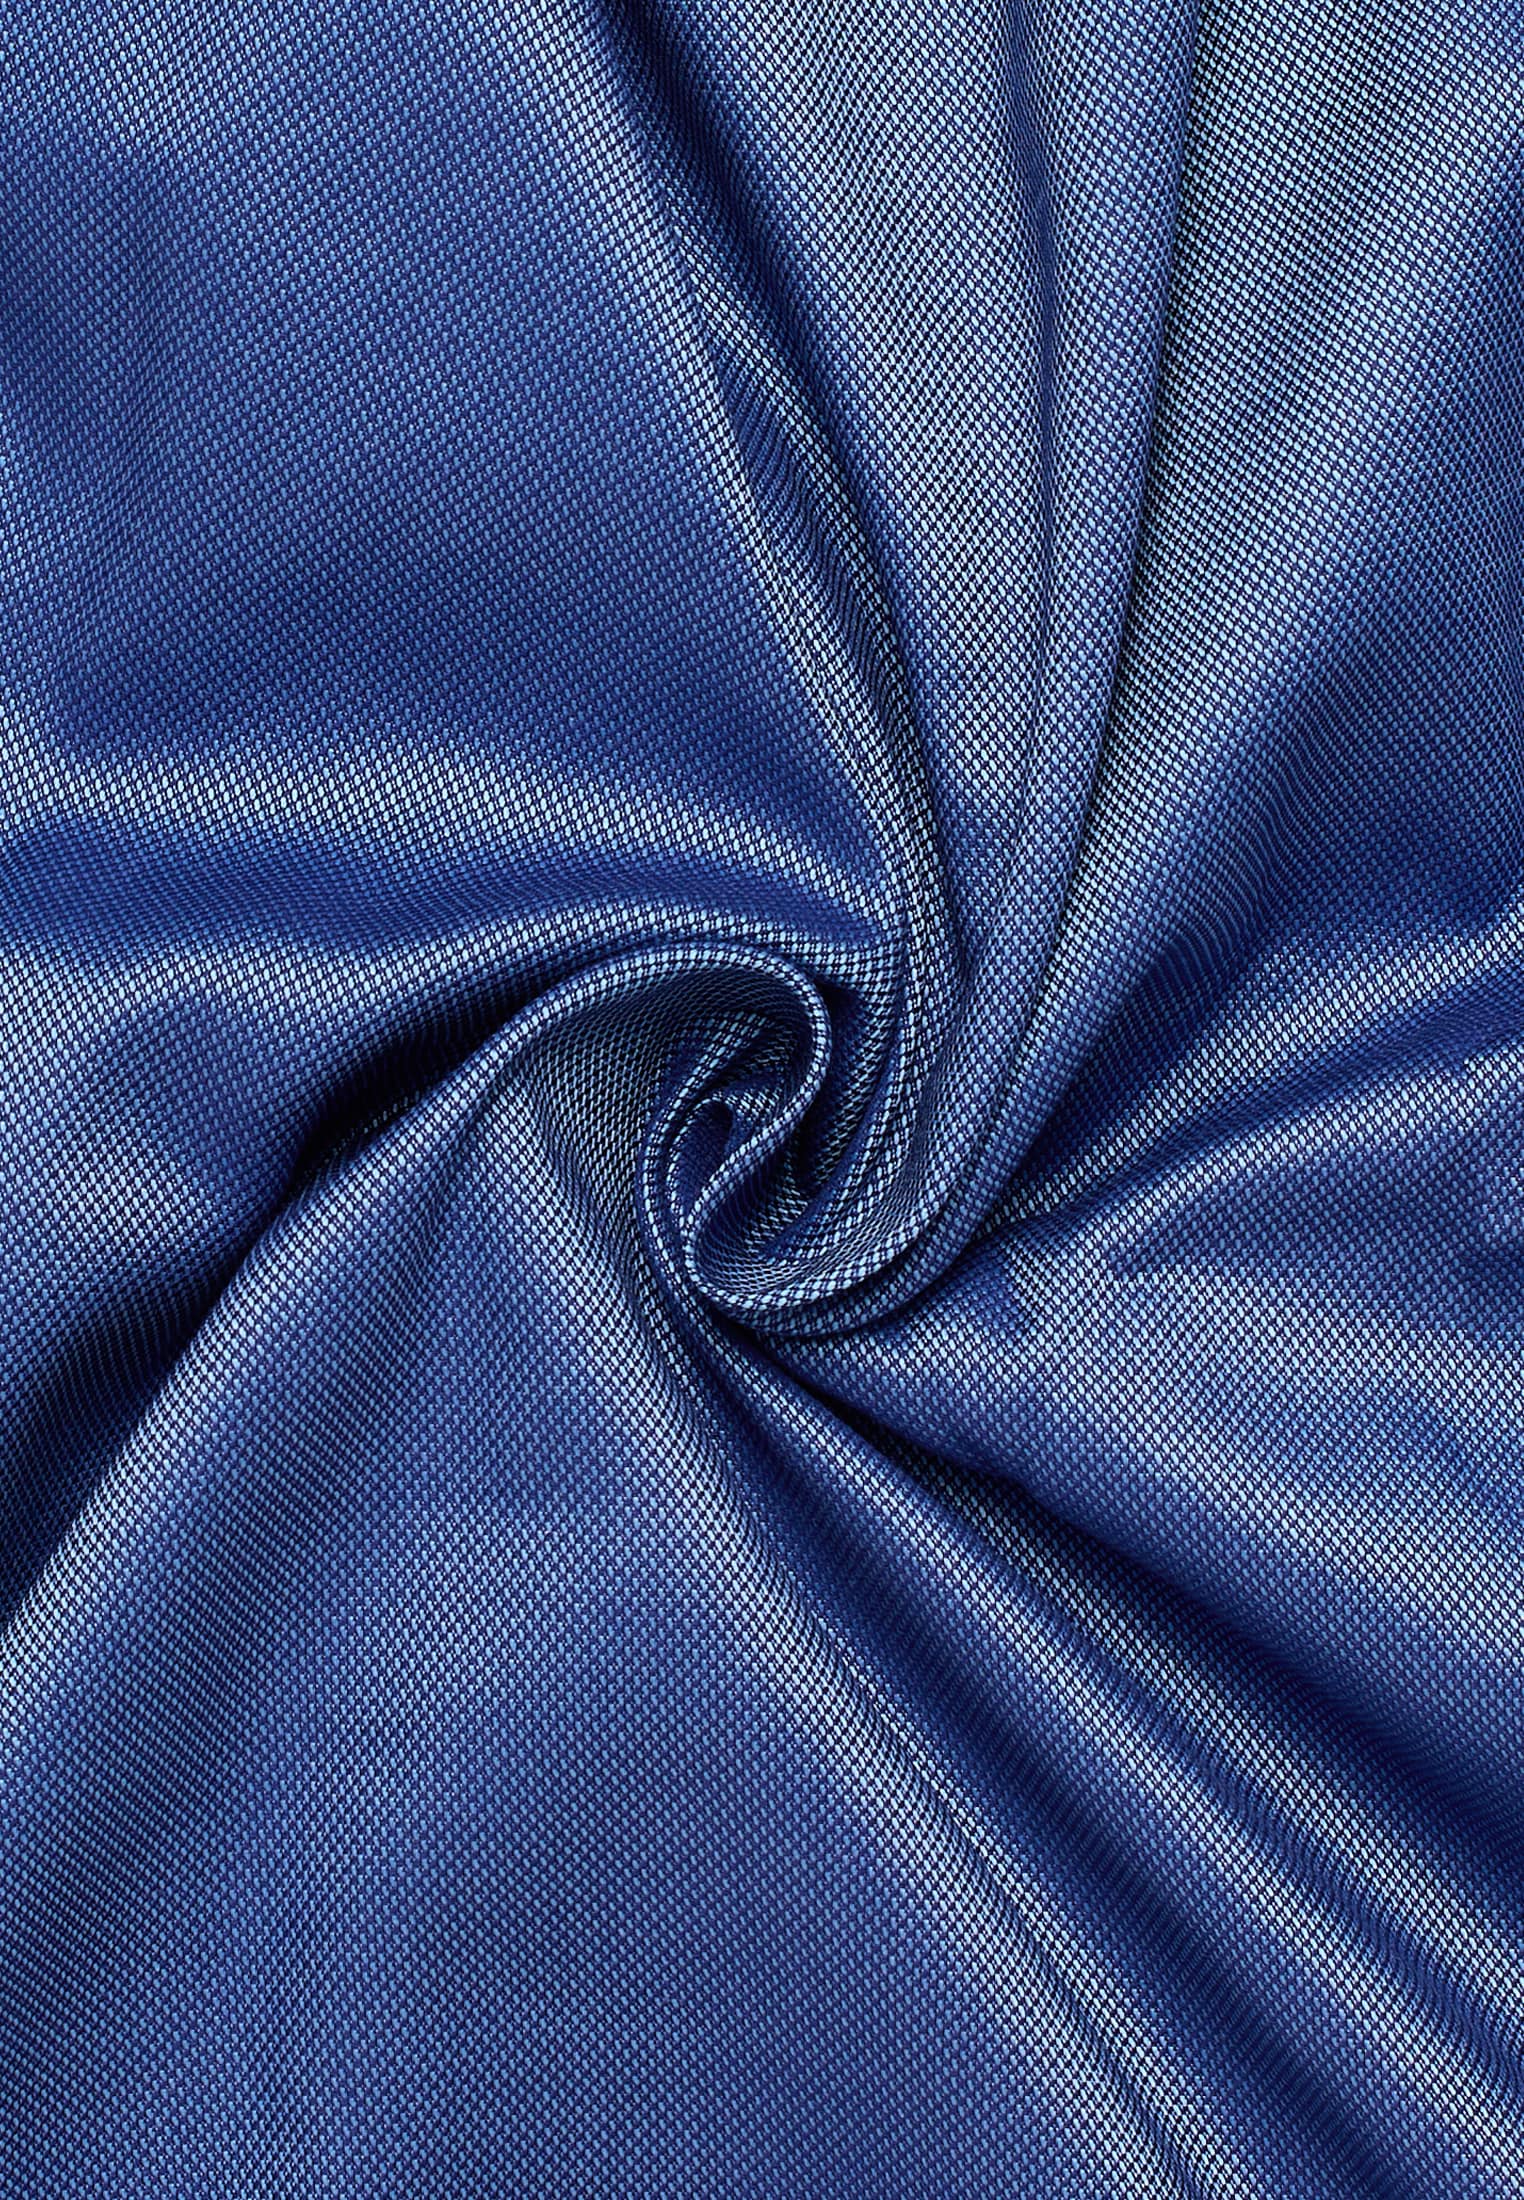 Langarm FIT Performance SLIM | blau blau 41 in 1SH12542-01-41-41-1/1 Shirt strukturiert | | |